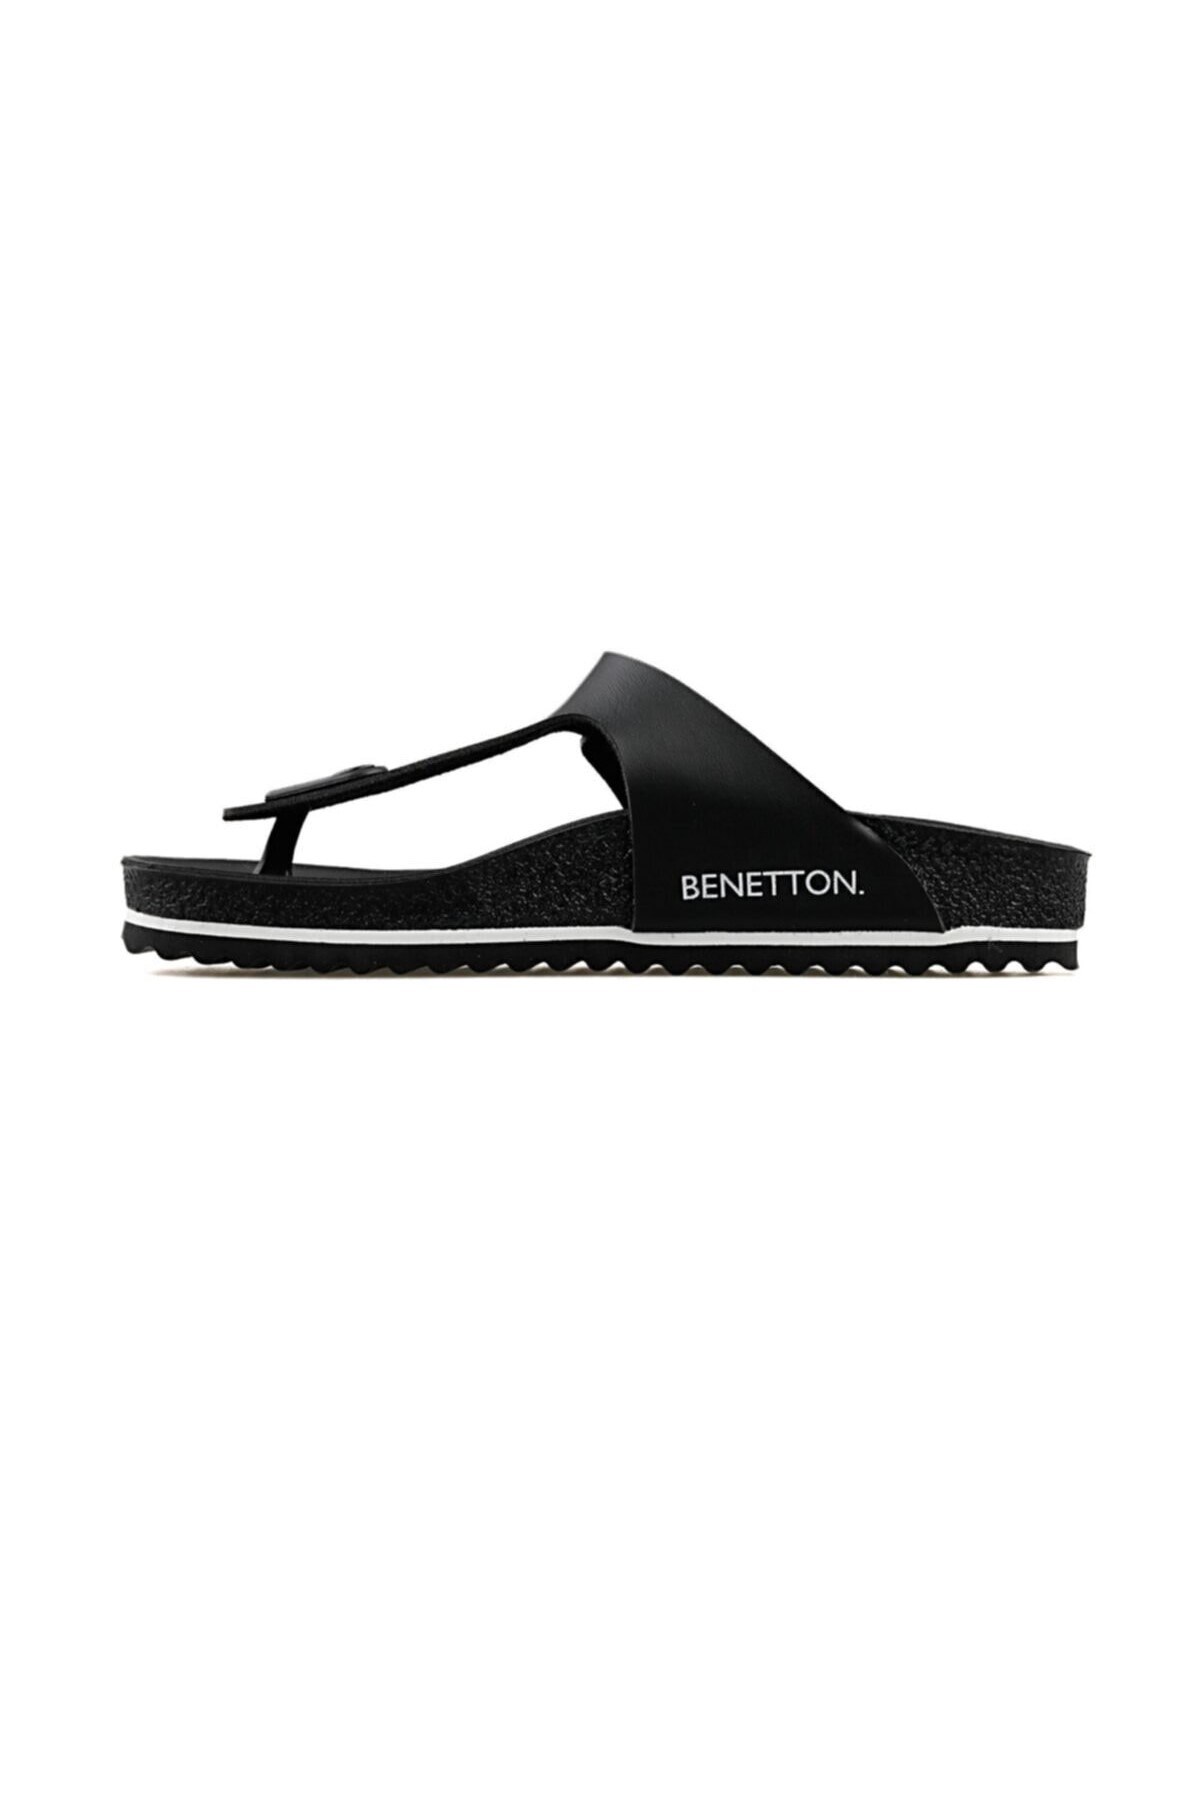 Benetton Kadın Terlik BN-1085 01-Siyah